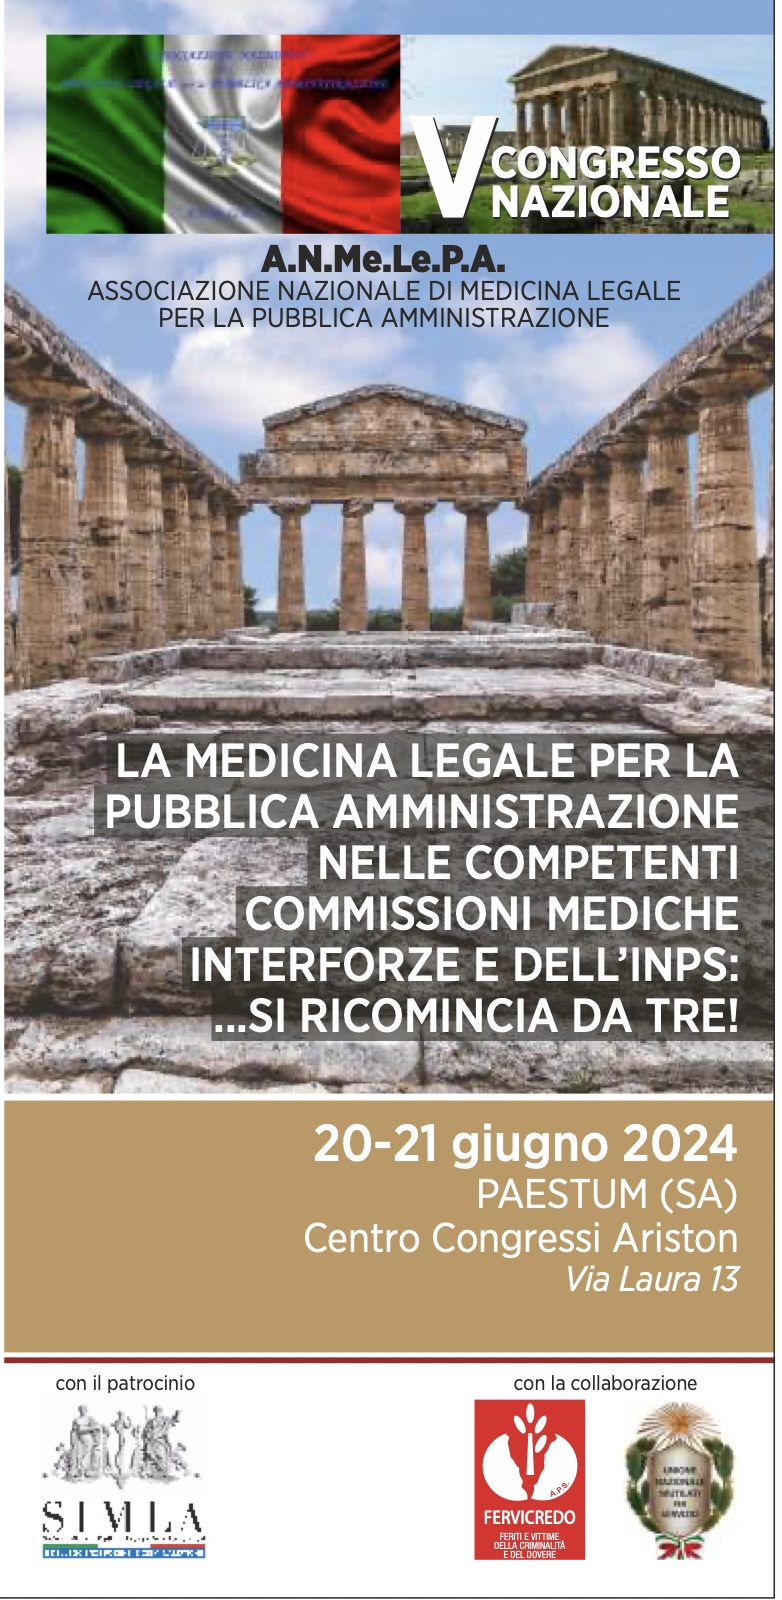 Paestum: Medicina legale e Pubblica amministrazione, V Congresso Nazionale A.N.Me.